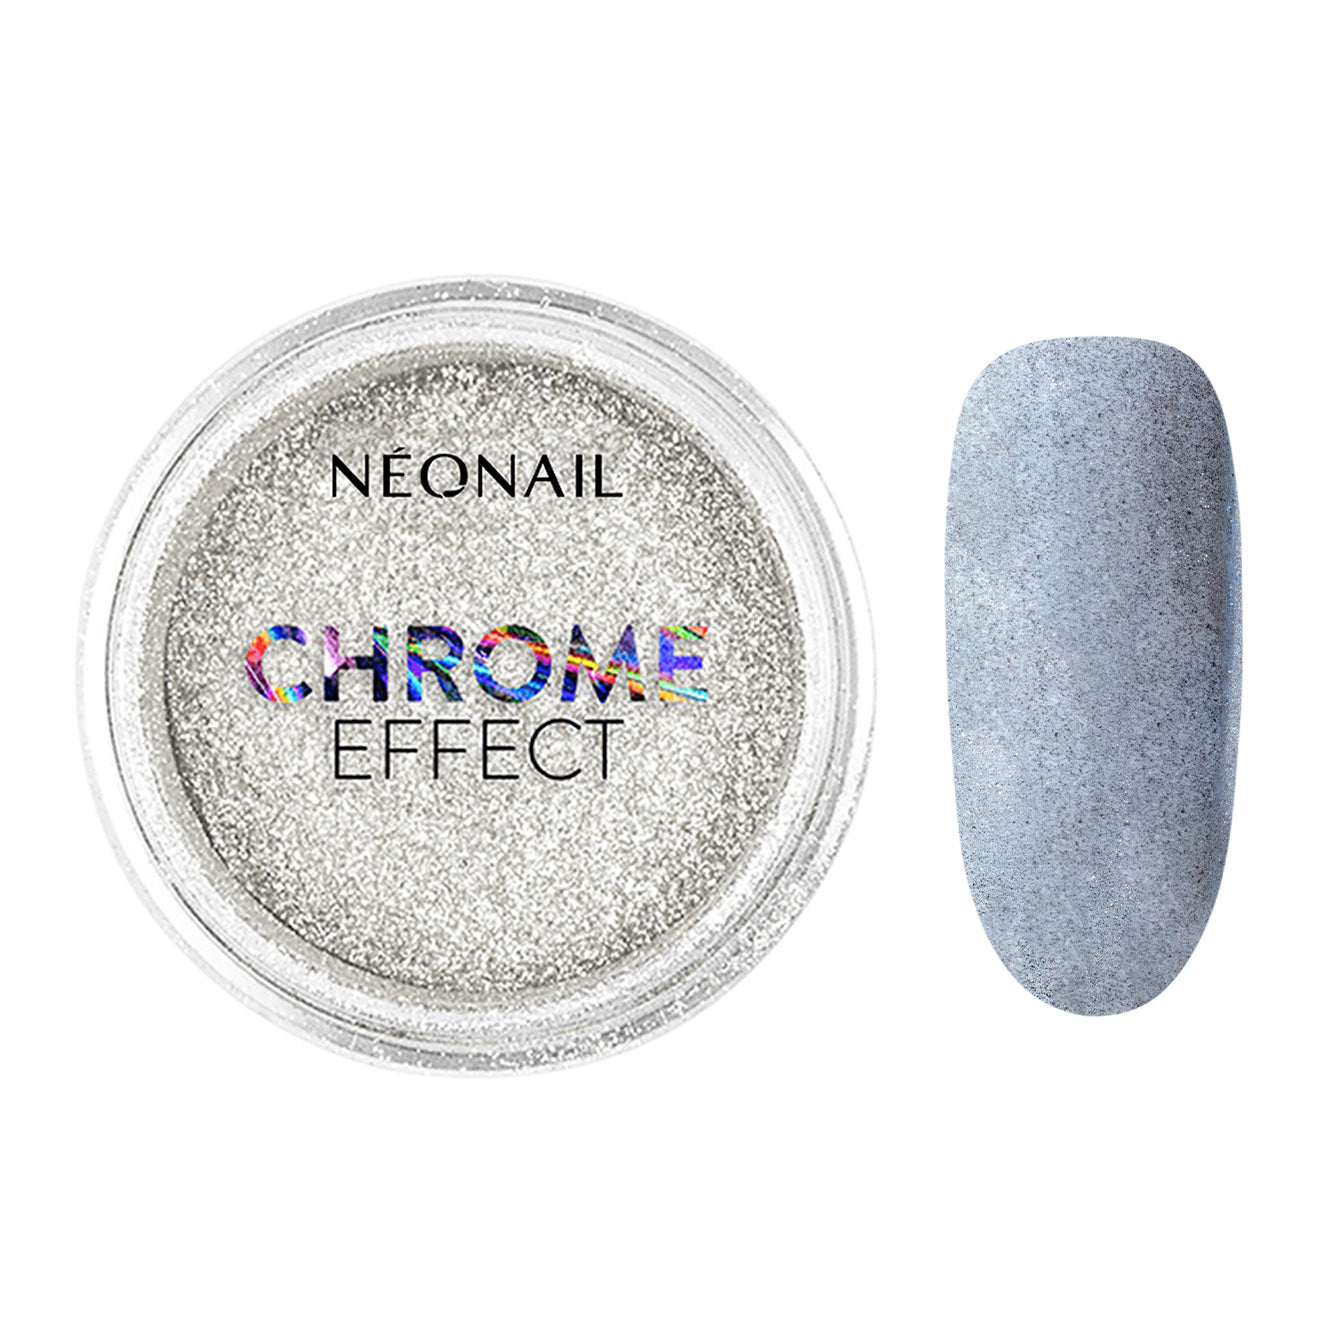 Neglepynt - Chrome Effect Silver - 2g-Neglepynt-NeoNail-NR Kosmetik